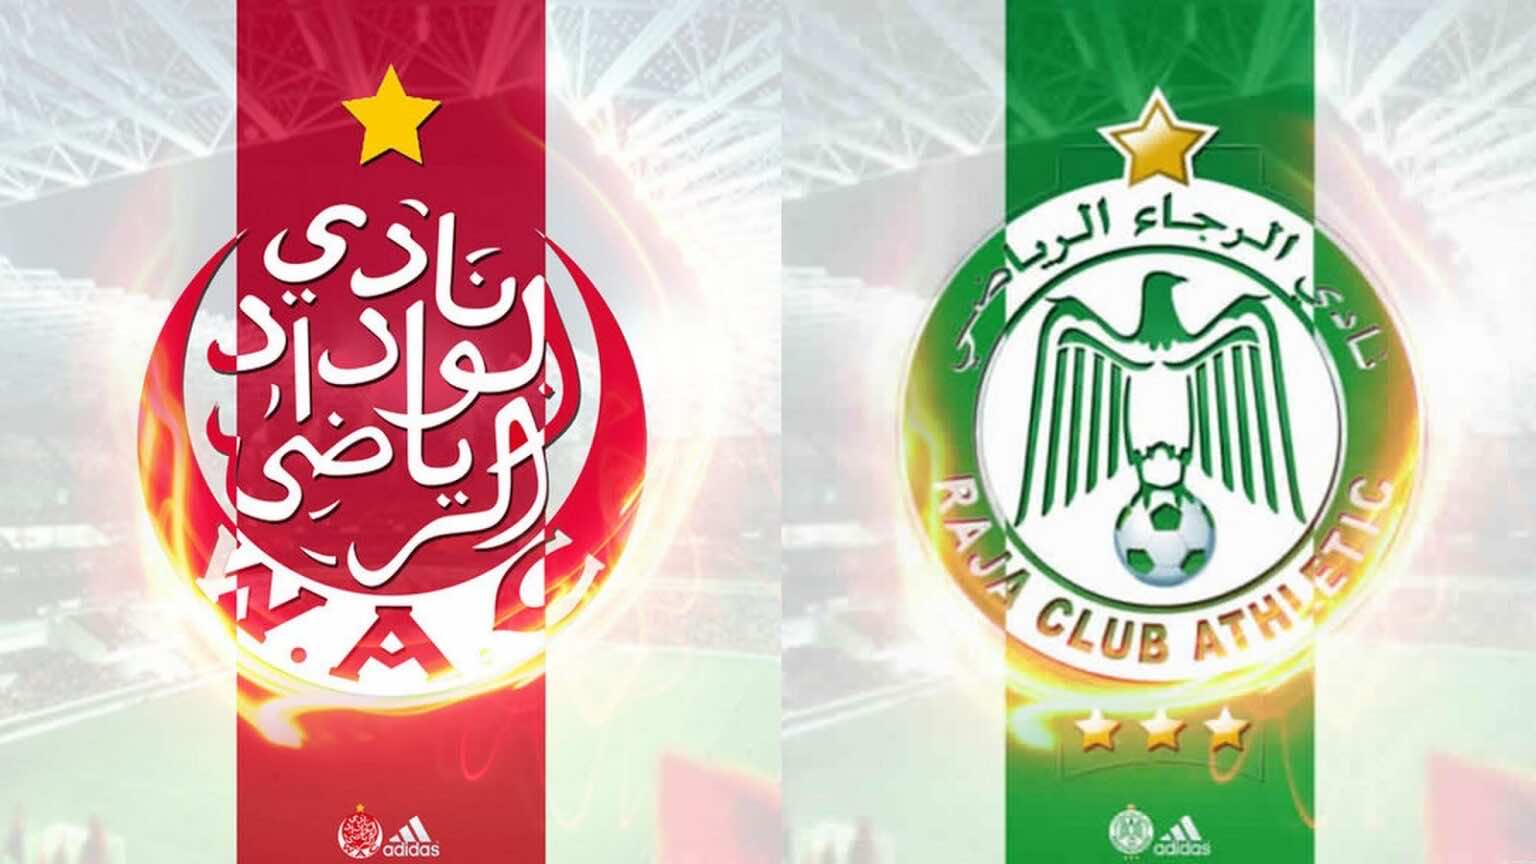 25 ألف تذكرة بيعت لحضور مباراة المغرب الفاسي والوداد